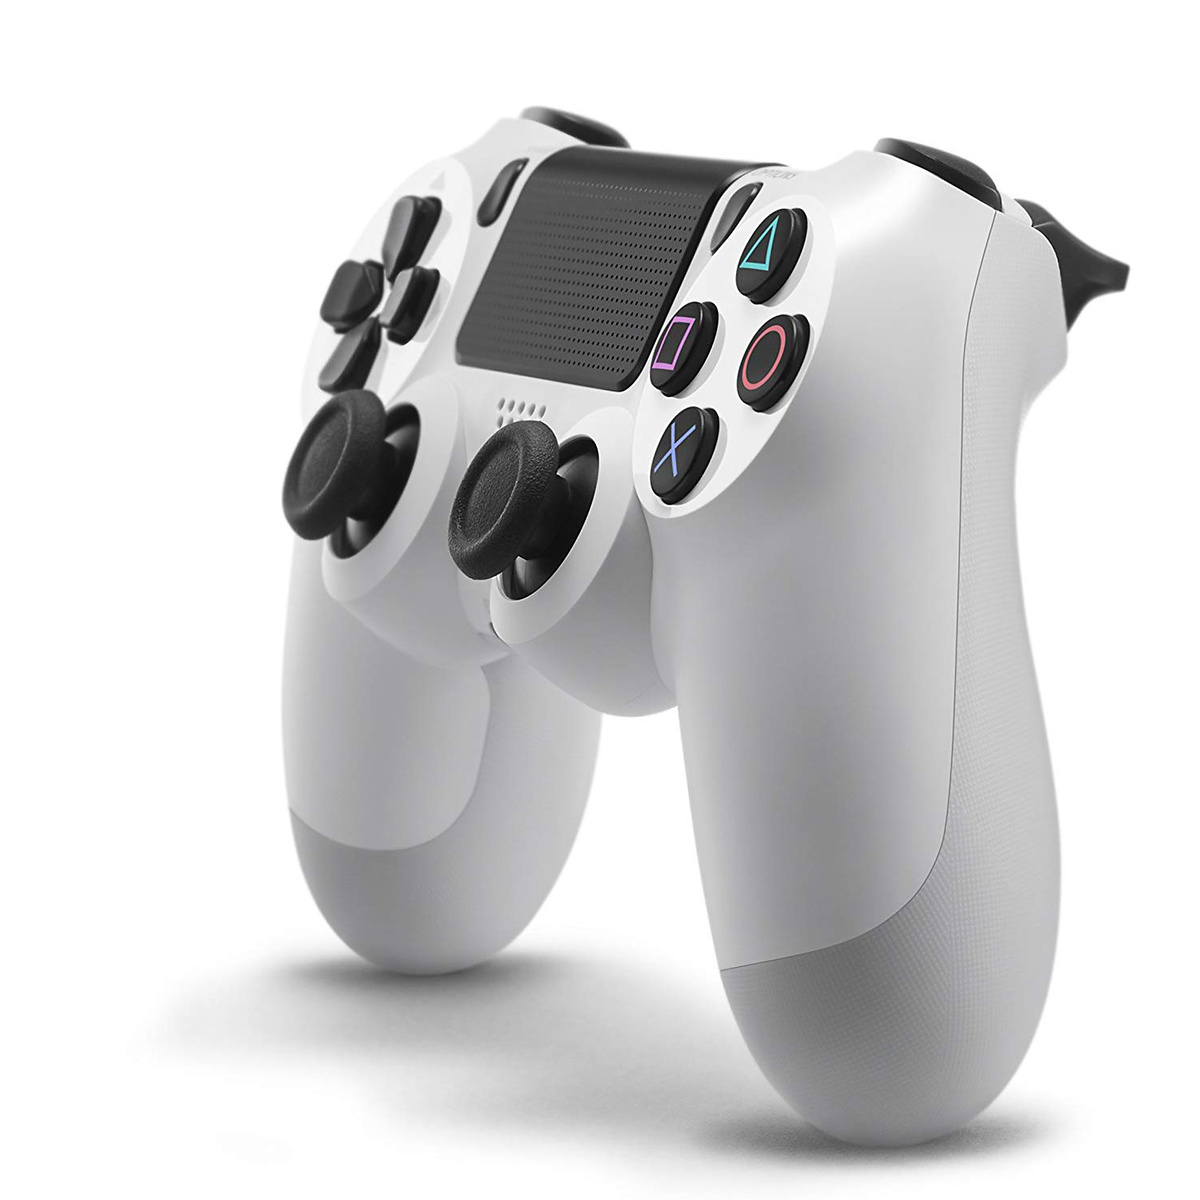 PS4 trådlös handkontroll, vit